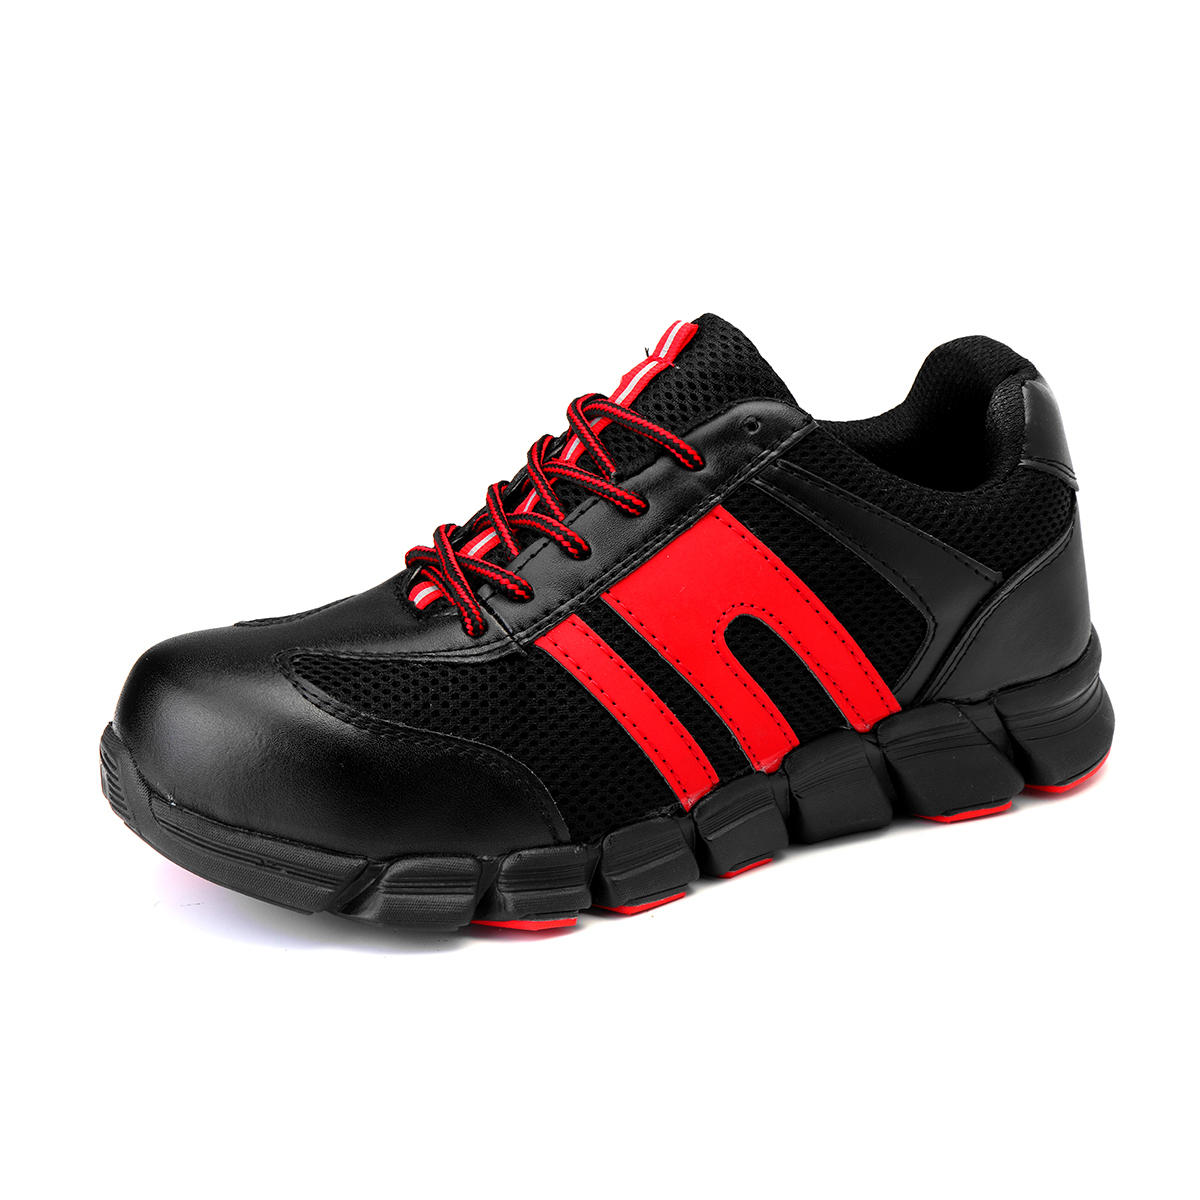 Chaussures de sécurité imperméables en acier TENGOO pour hommes, chaussures de sport à la mode et antidérapantes.